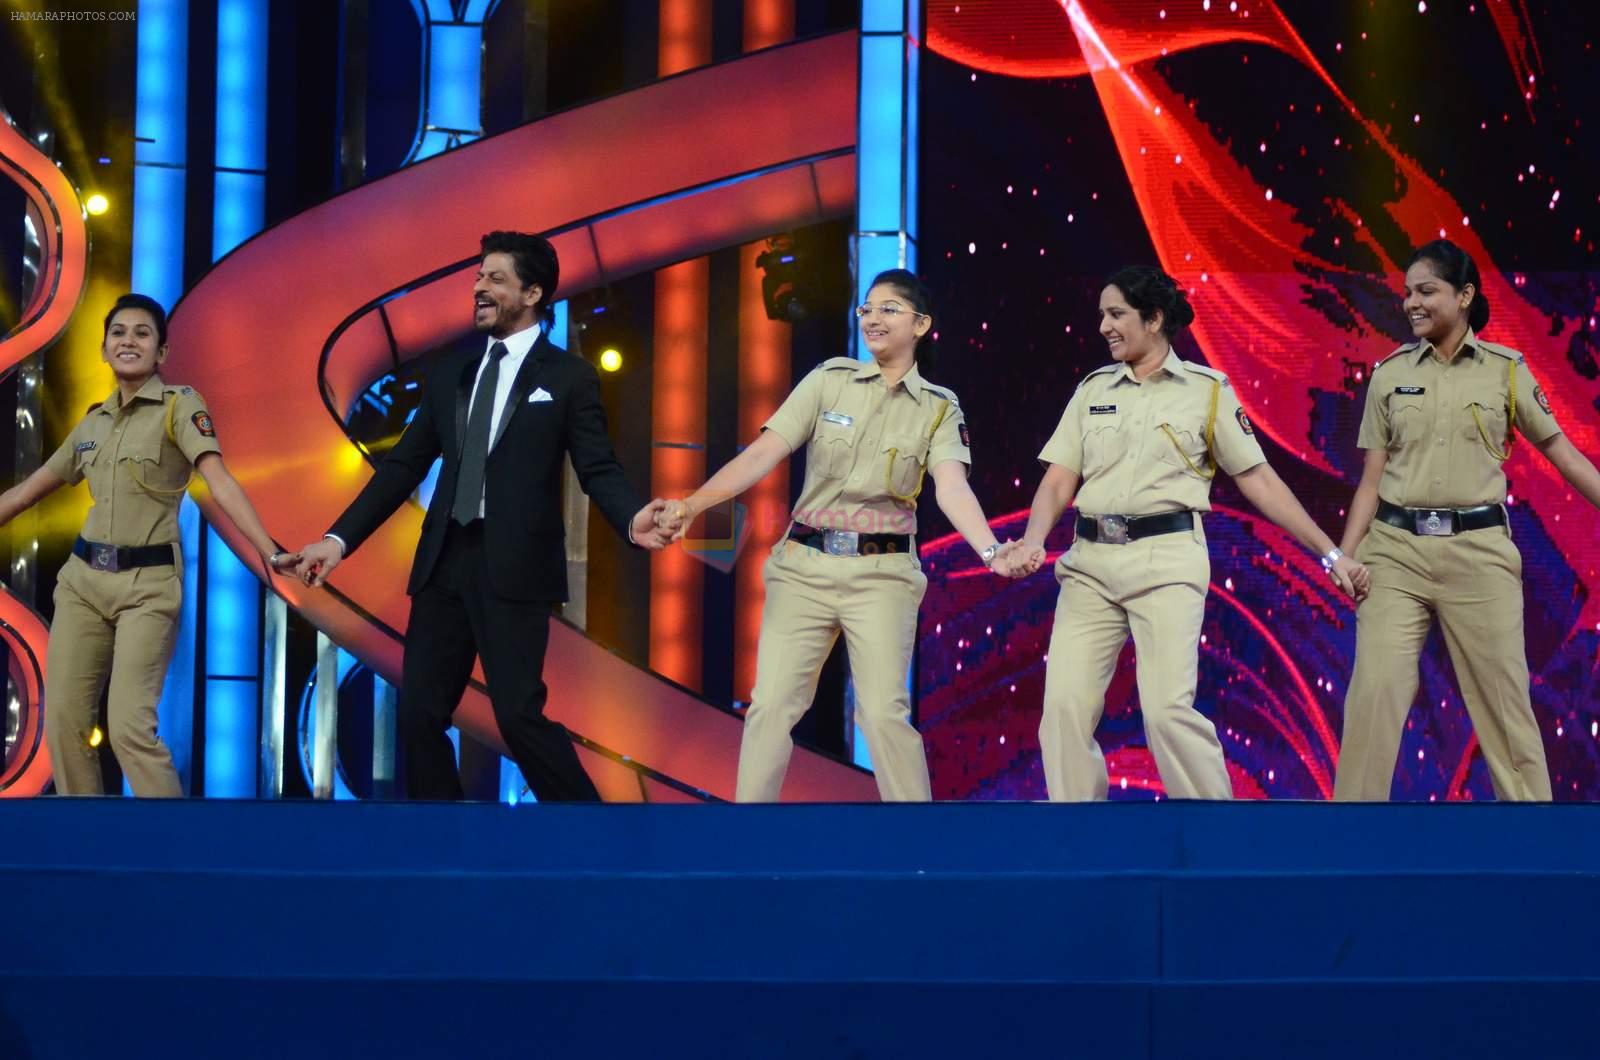 Shahrukh Khan at Umang police show on 19th Jan 2016